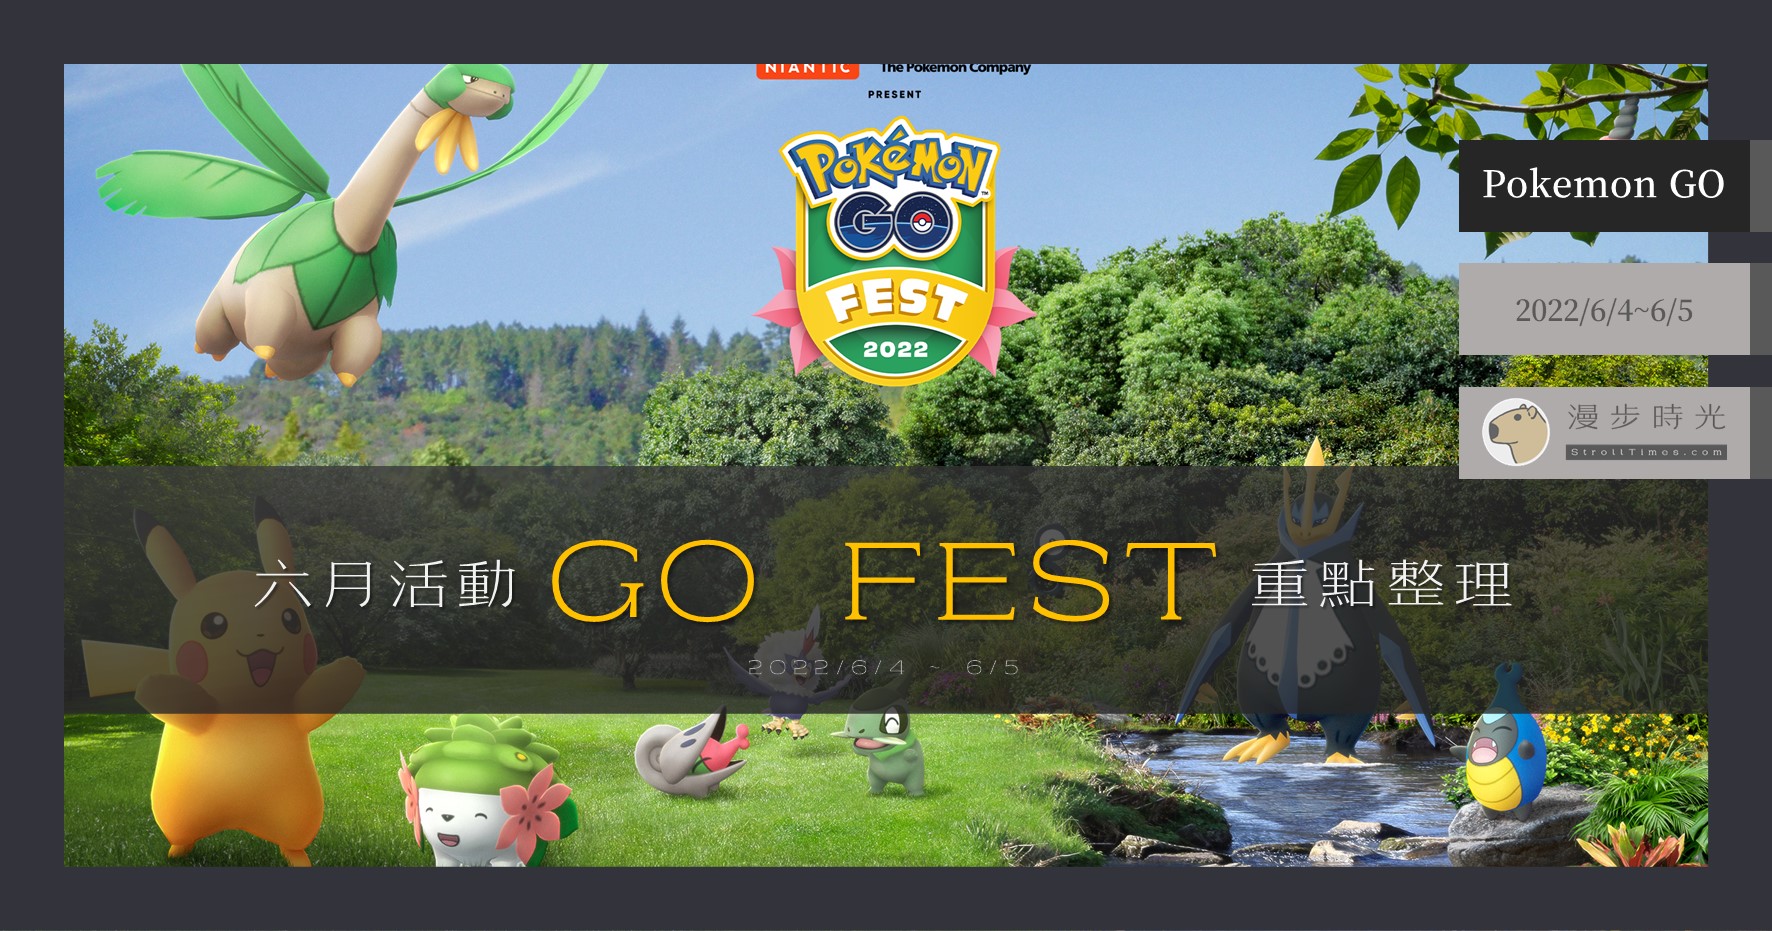 【Pokemon GO】2022年6月「GO FEST 2022」：謝米來了！四大棲地寶可夢輪流出沒，未知圖騰、牙牙、熱帶龍必抓！